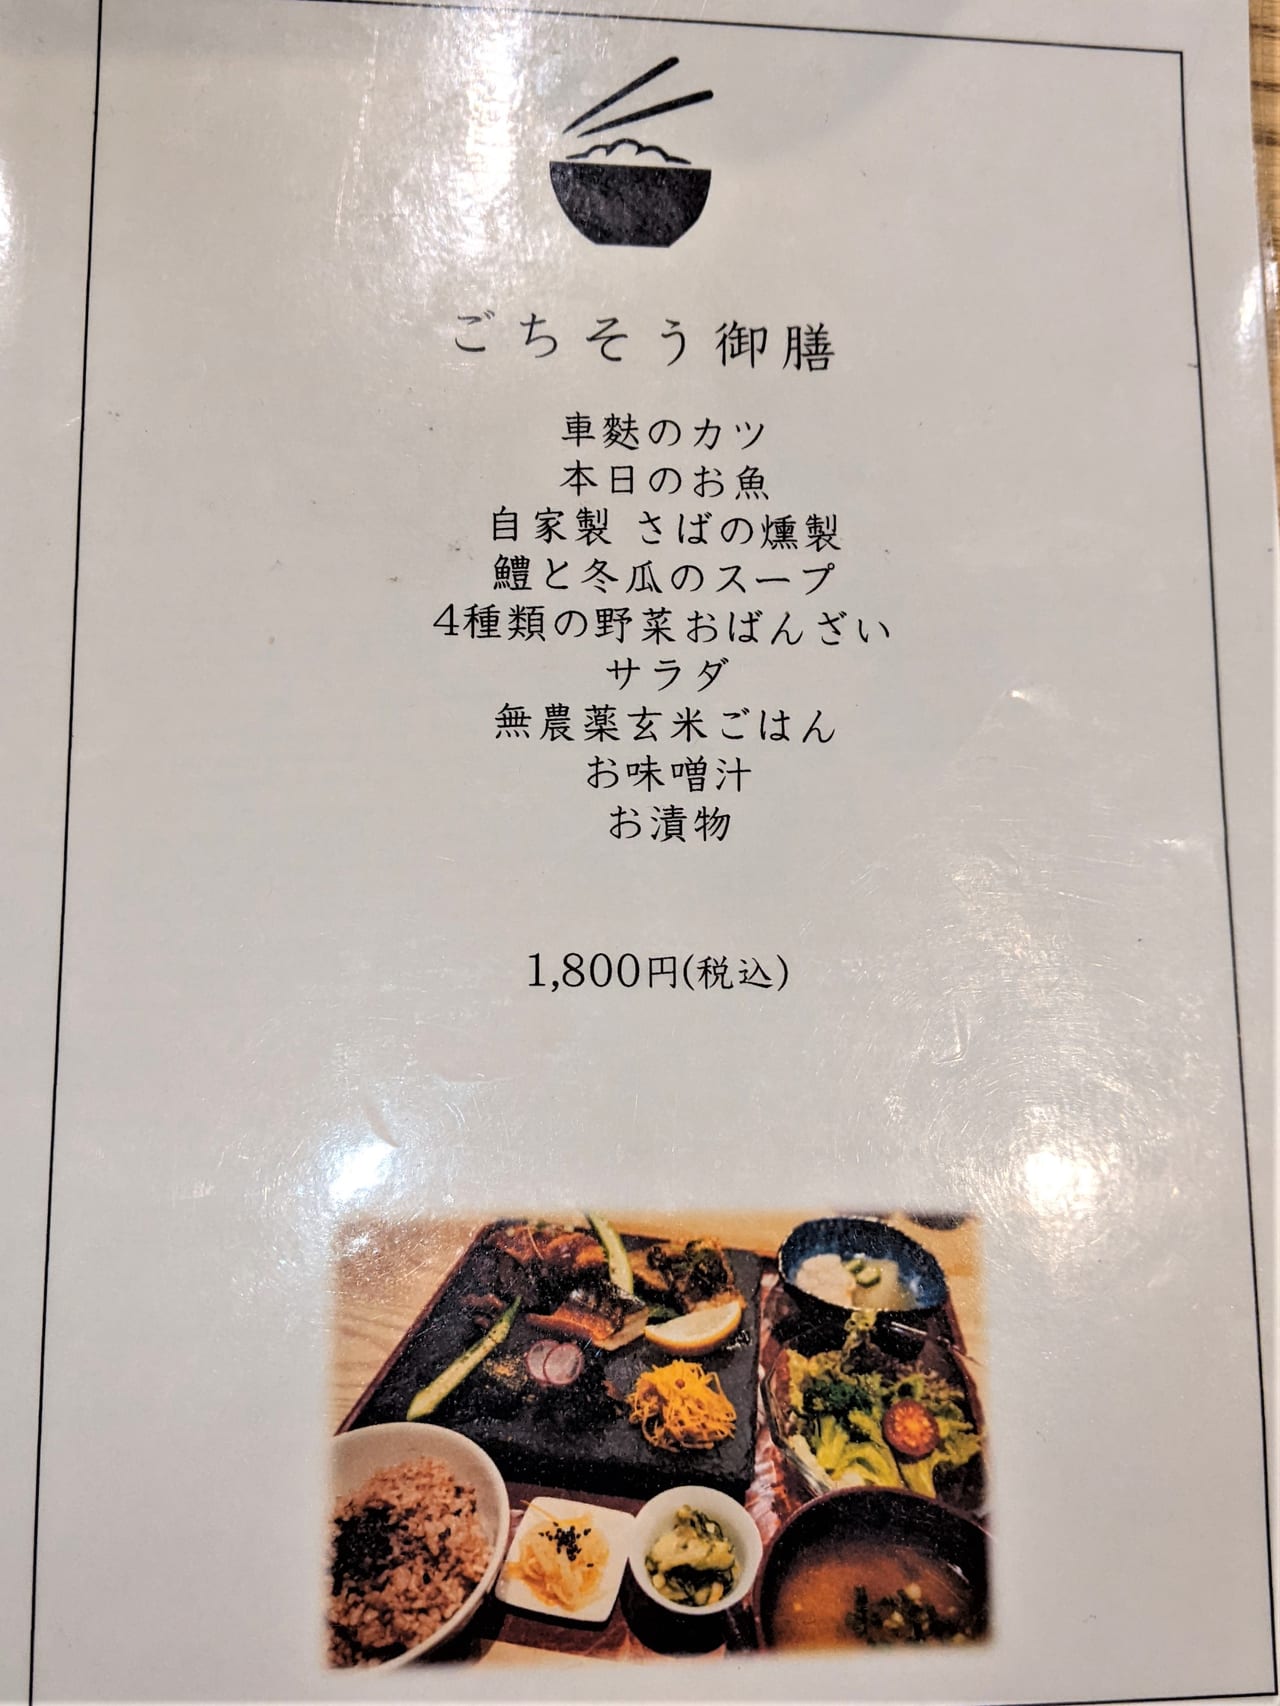 SALT-石川食堂のメニュー